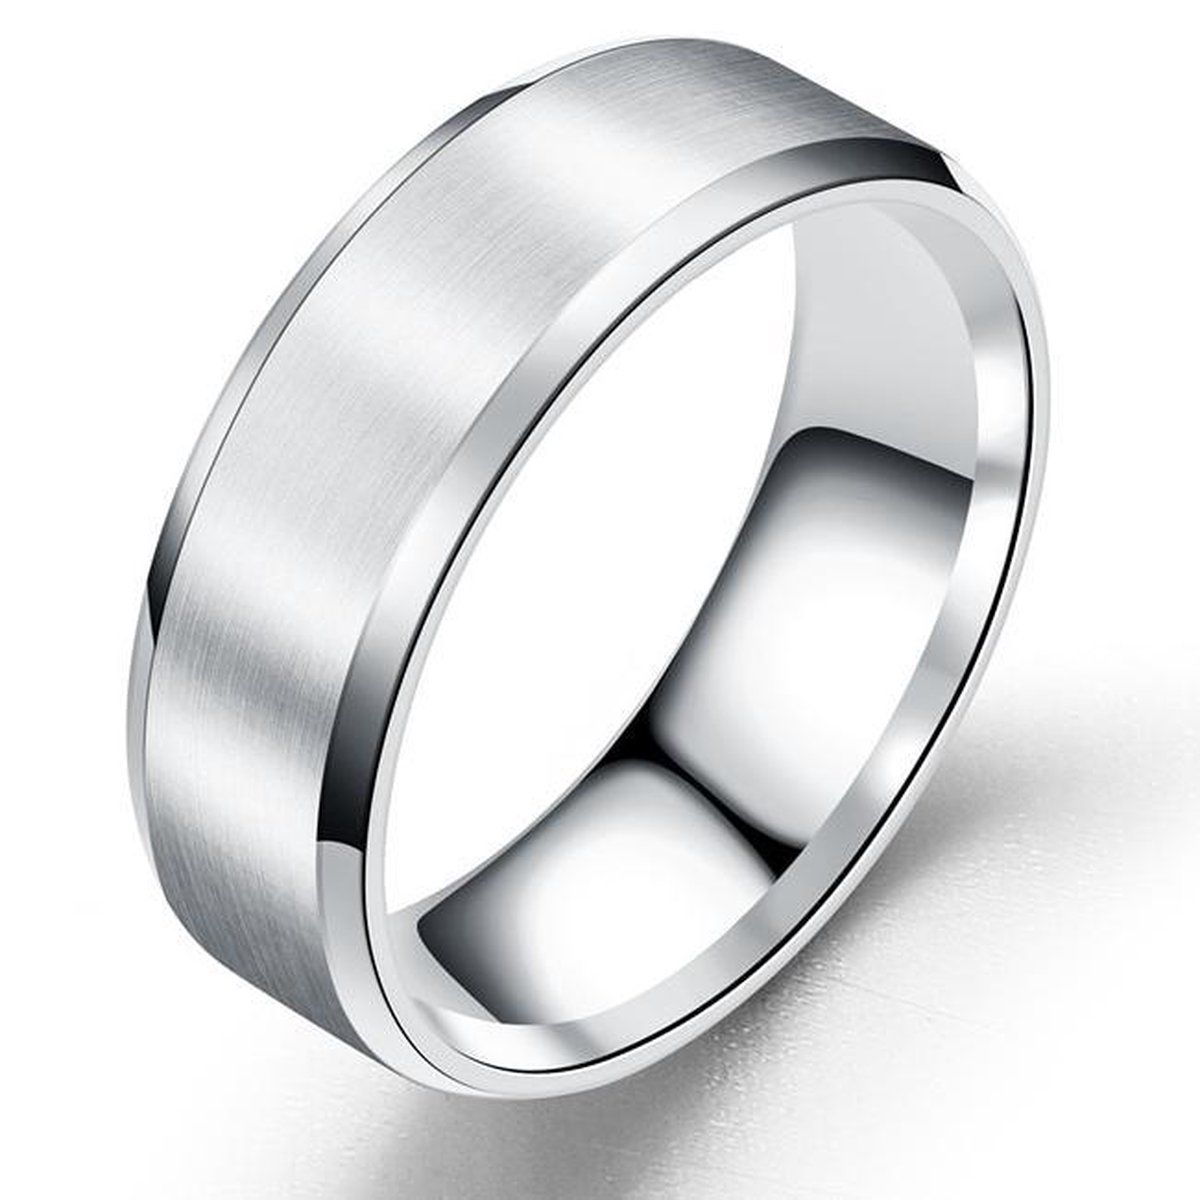 Heren Ring Zilver kleurig met Strak Gepolijste Rand - Staal - Ringen Mannen Dames - Cadeau voor Man - Mannen Cadeautjes - TrendFox